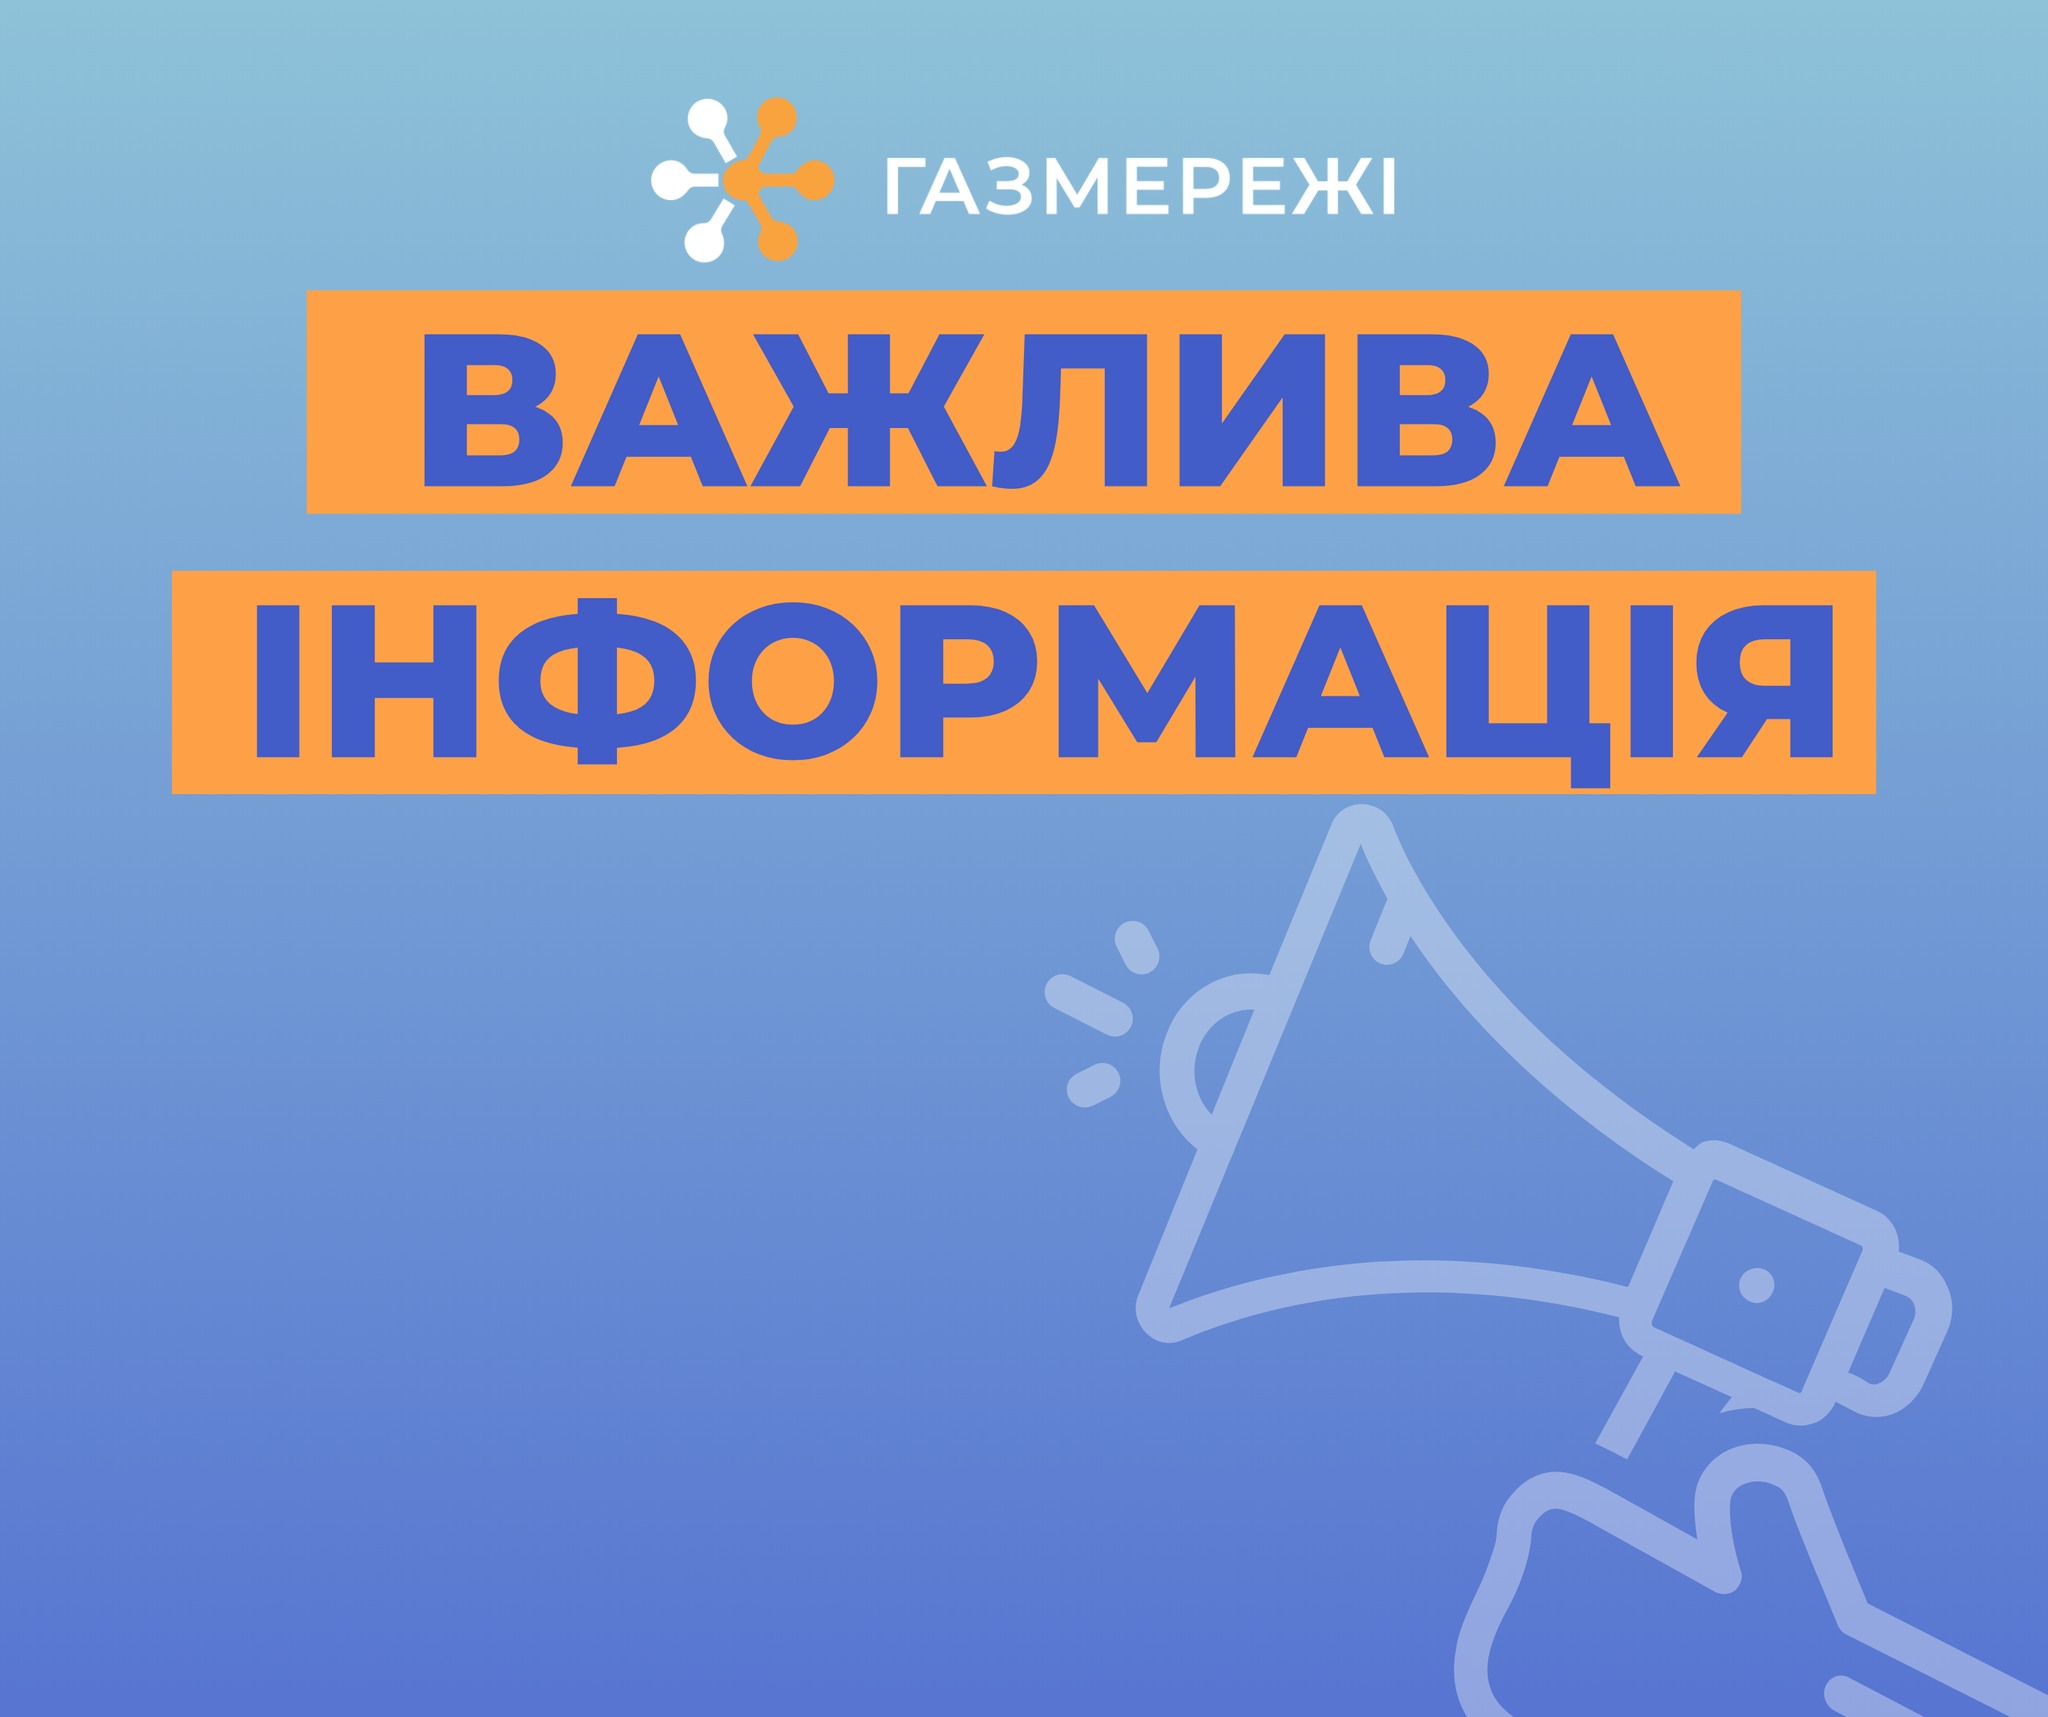 Дніпровська філія «ГАЗМЕРЕЖІ» застерігає: чадний газ небезпечний для вашого життя та здоров’я